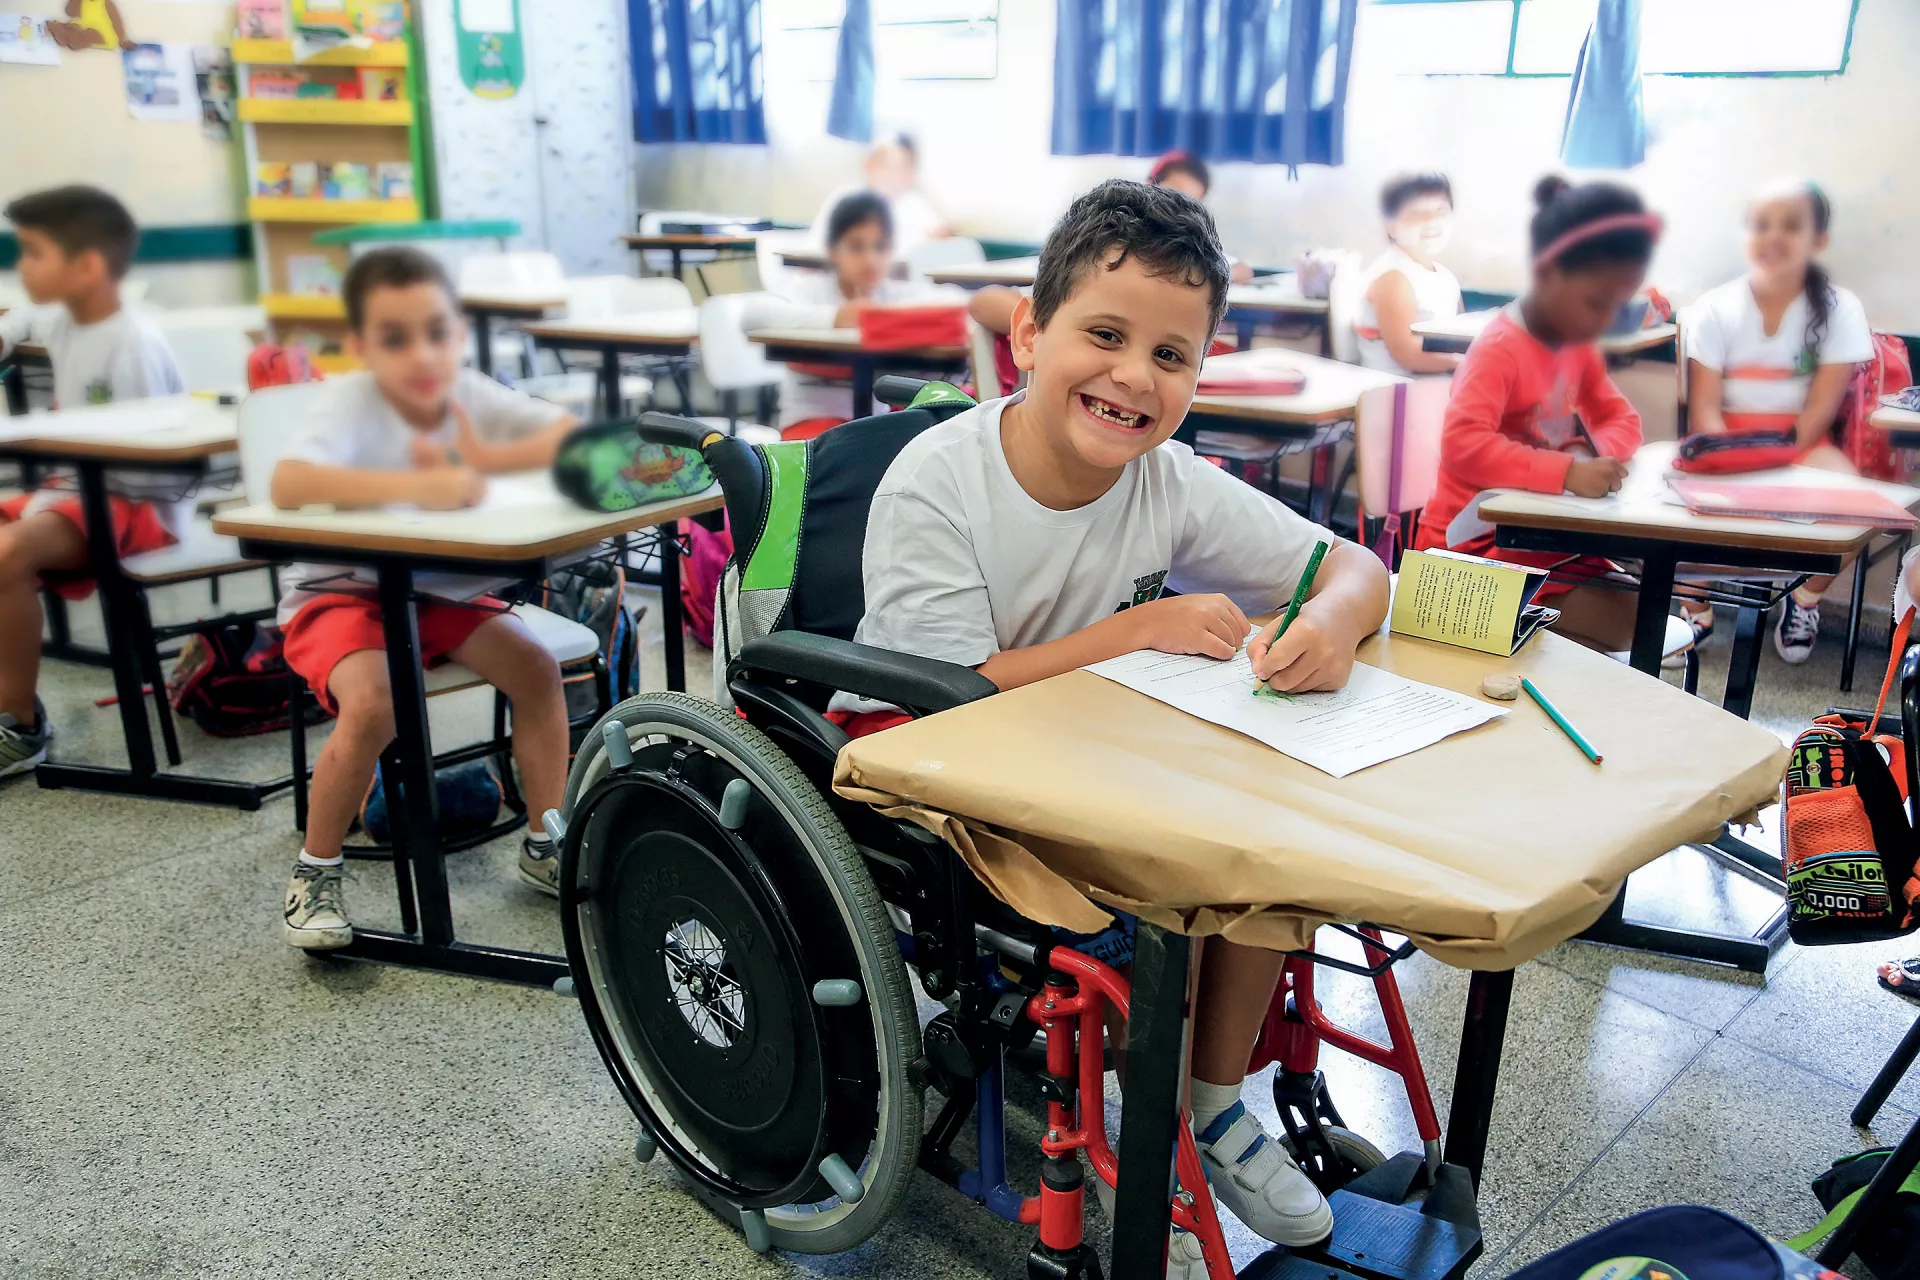 Menino que usa cadeira de rodas assiste à aula em escola regular